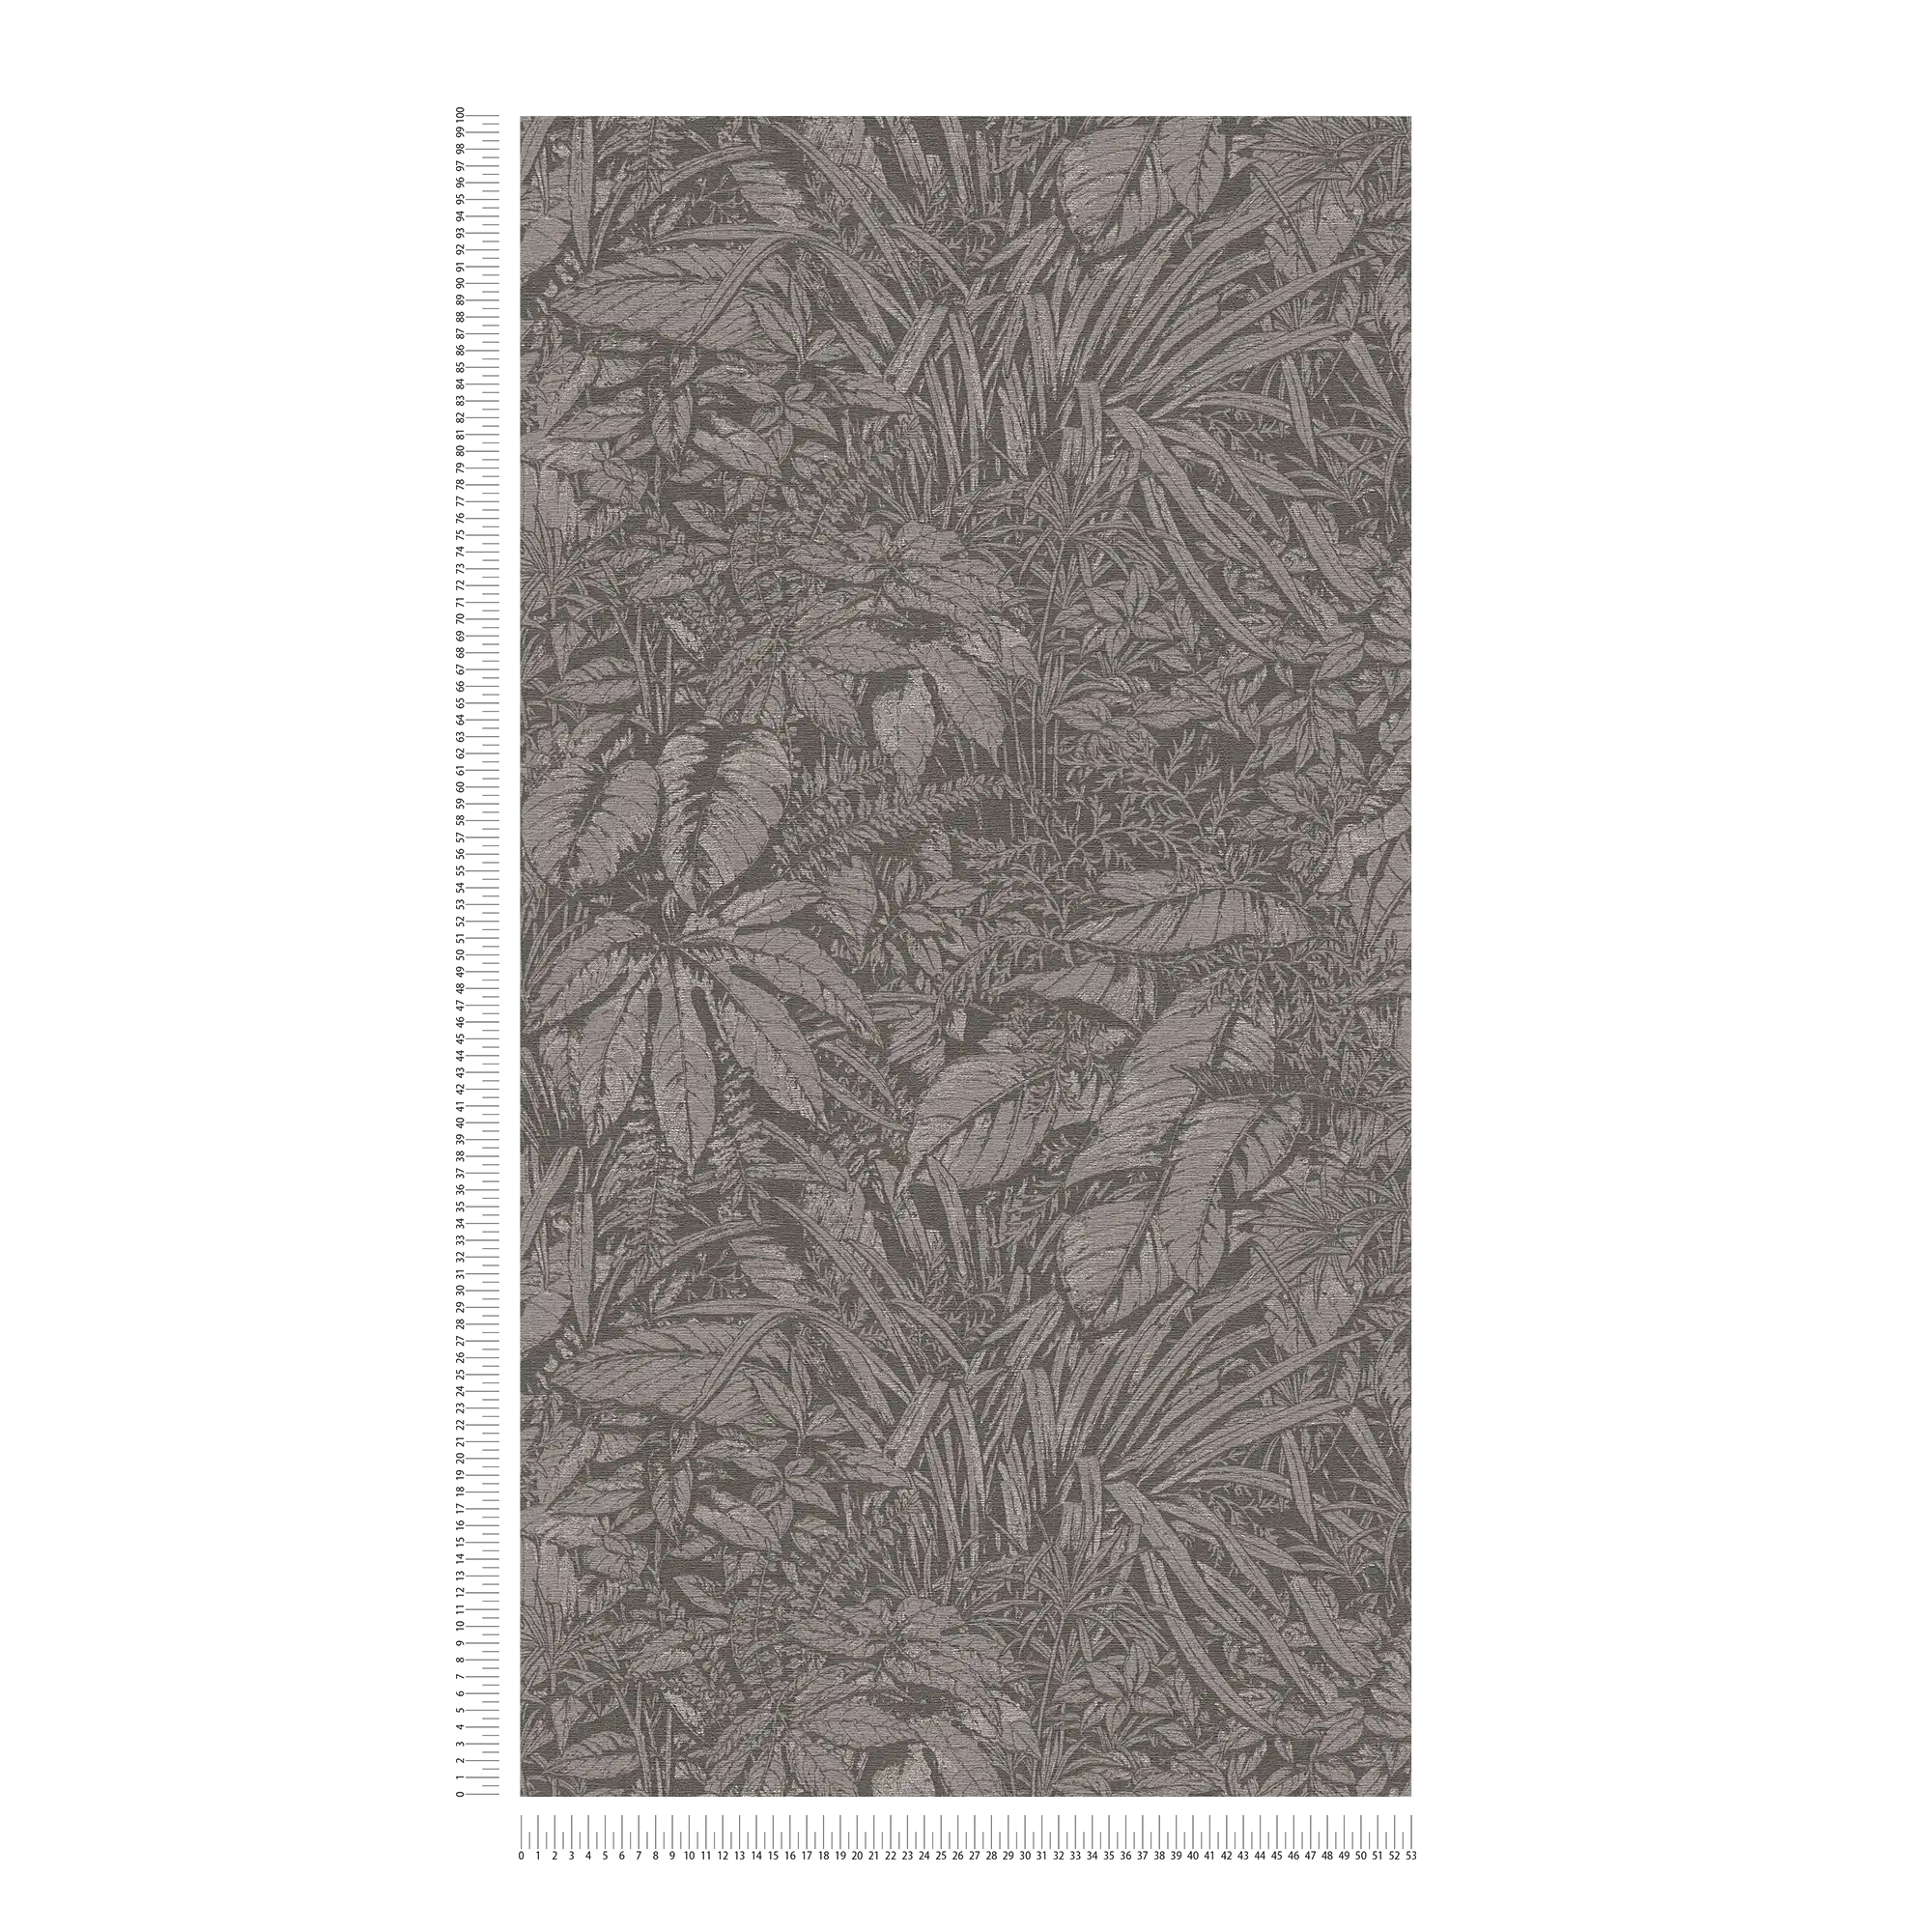             Papel pintado no tejido con motivo de hojas florales - gris, negro, plata
        